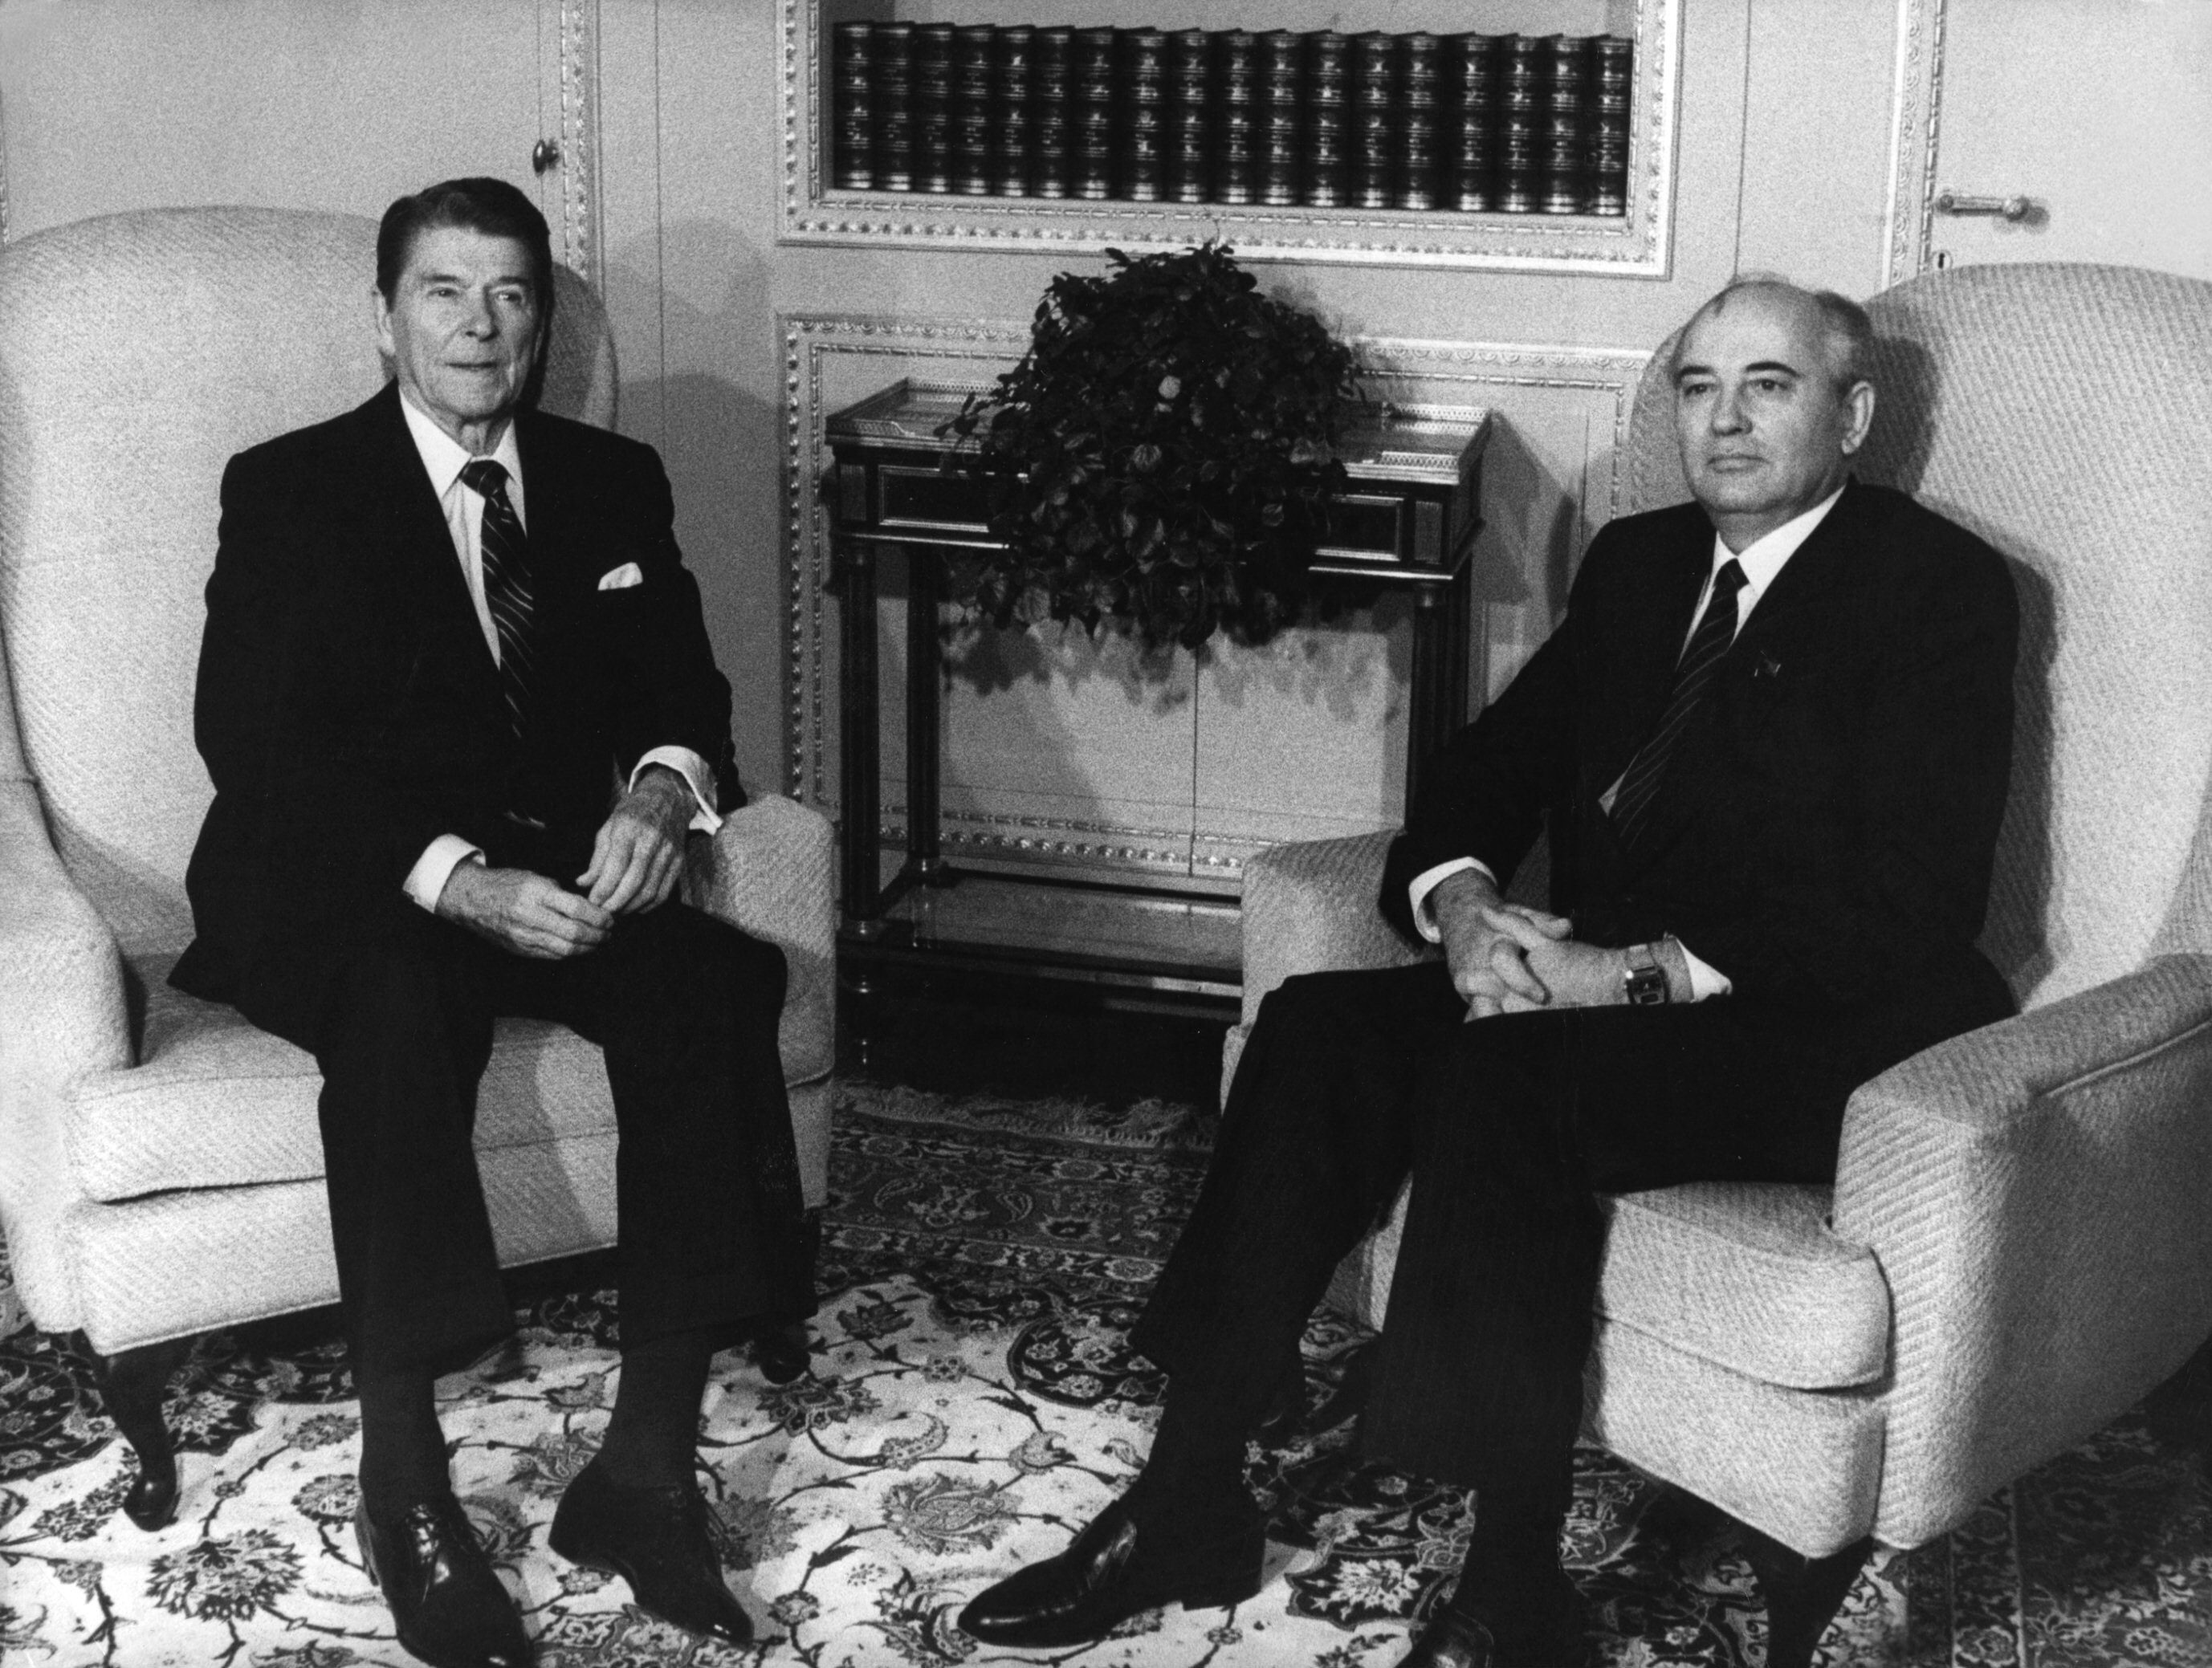 La cumbre de Ginebra de 1985: el día que Gorbachov y Reagan acordaron el principio del fin de la Guerra Fría